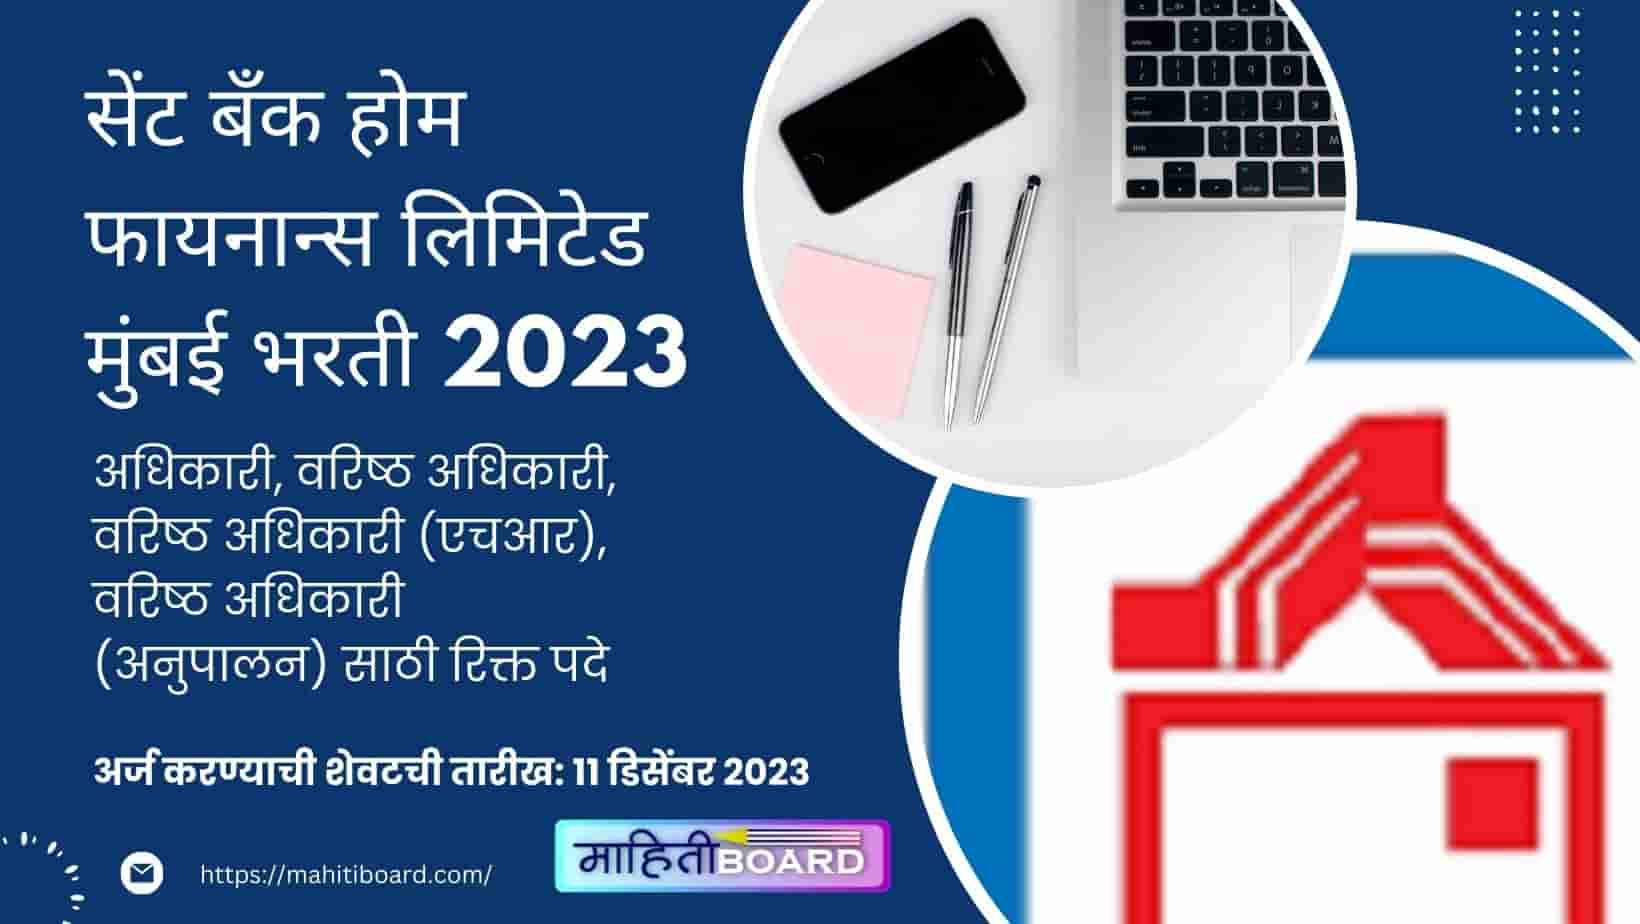 Cent Bank Home Finance Ltd Bharti 2023